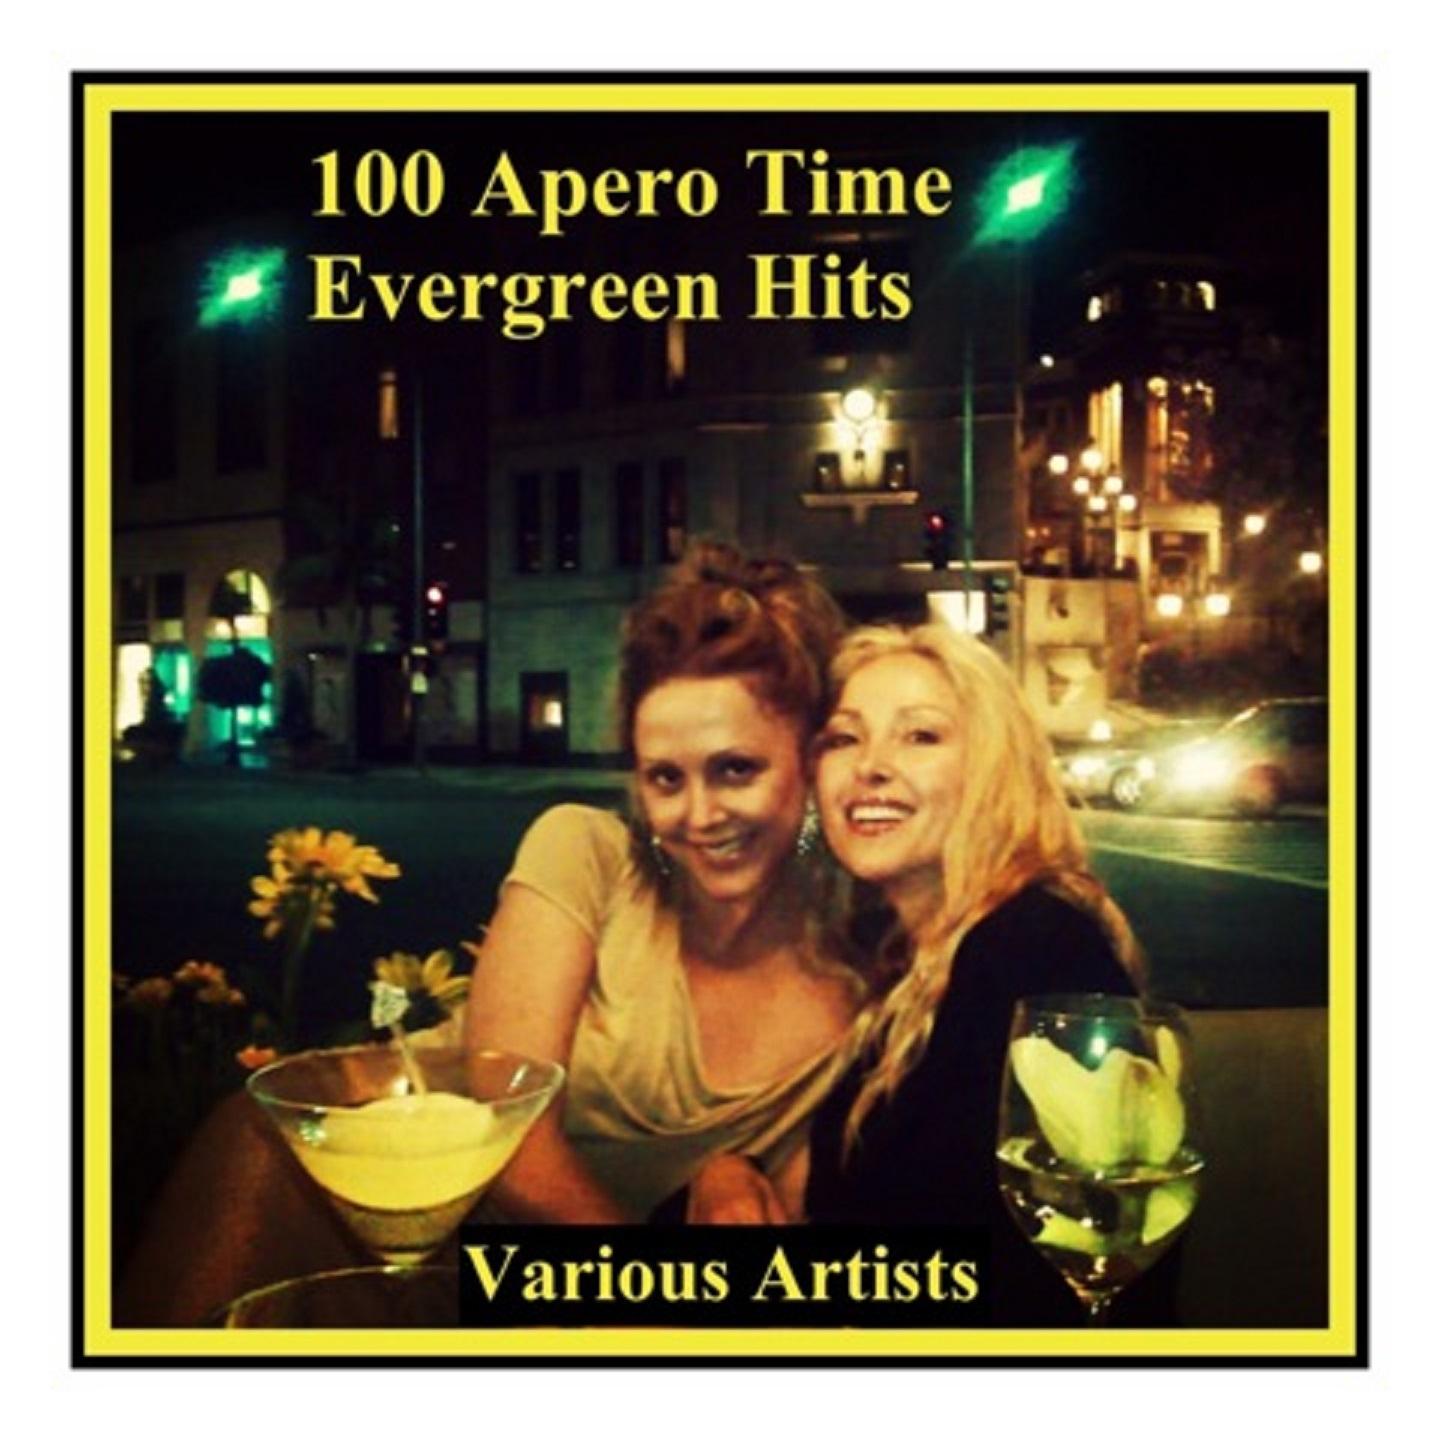 100 Apero Time Evergreen Hits